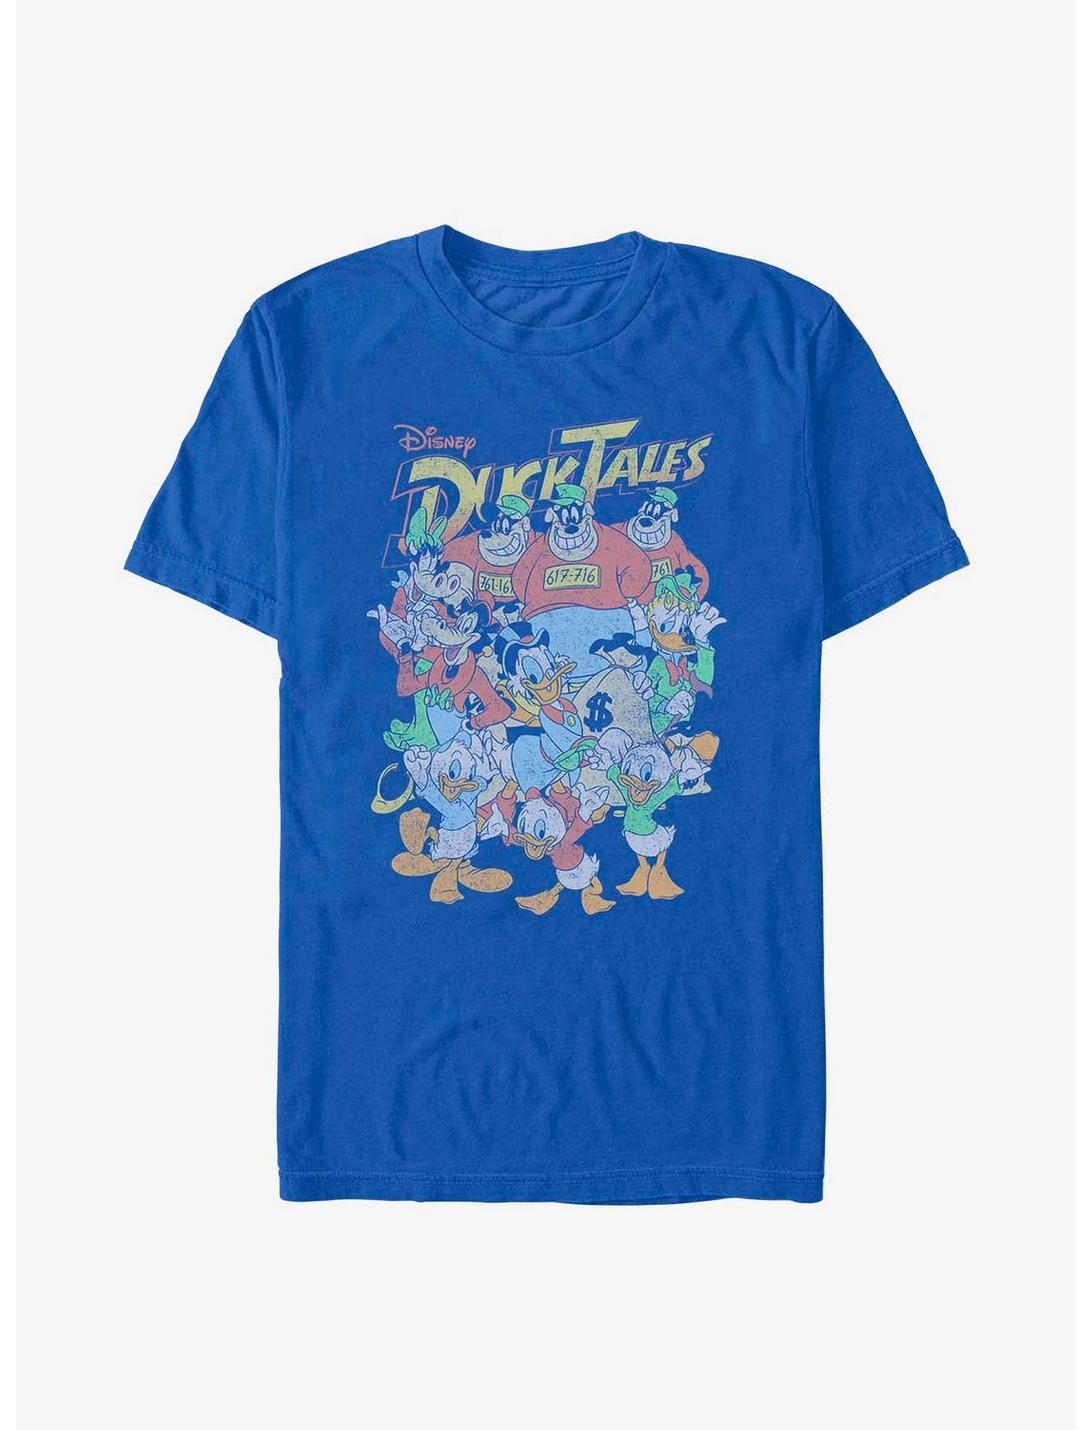 Disney Ducktales Ducktales Crew T-Shirt, ROYAL, hi-res